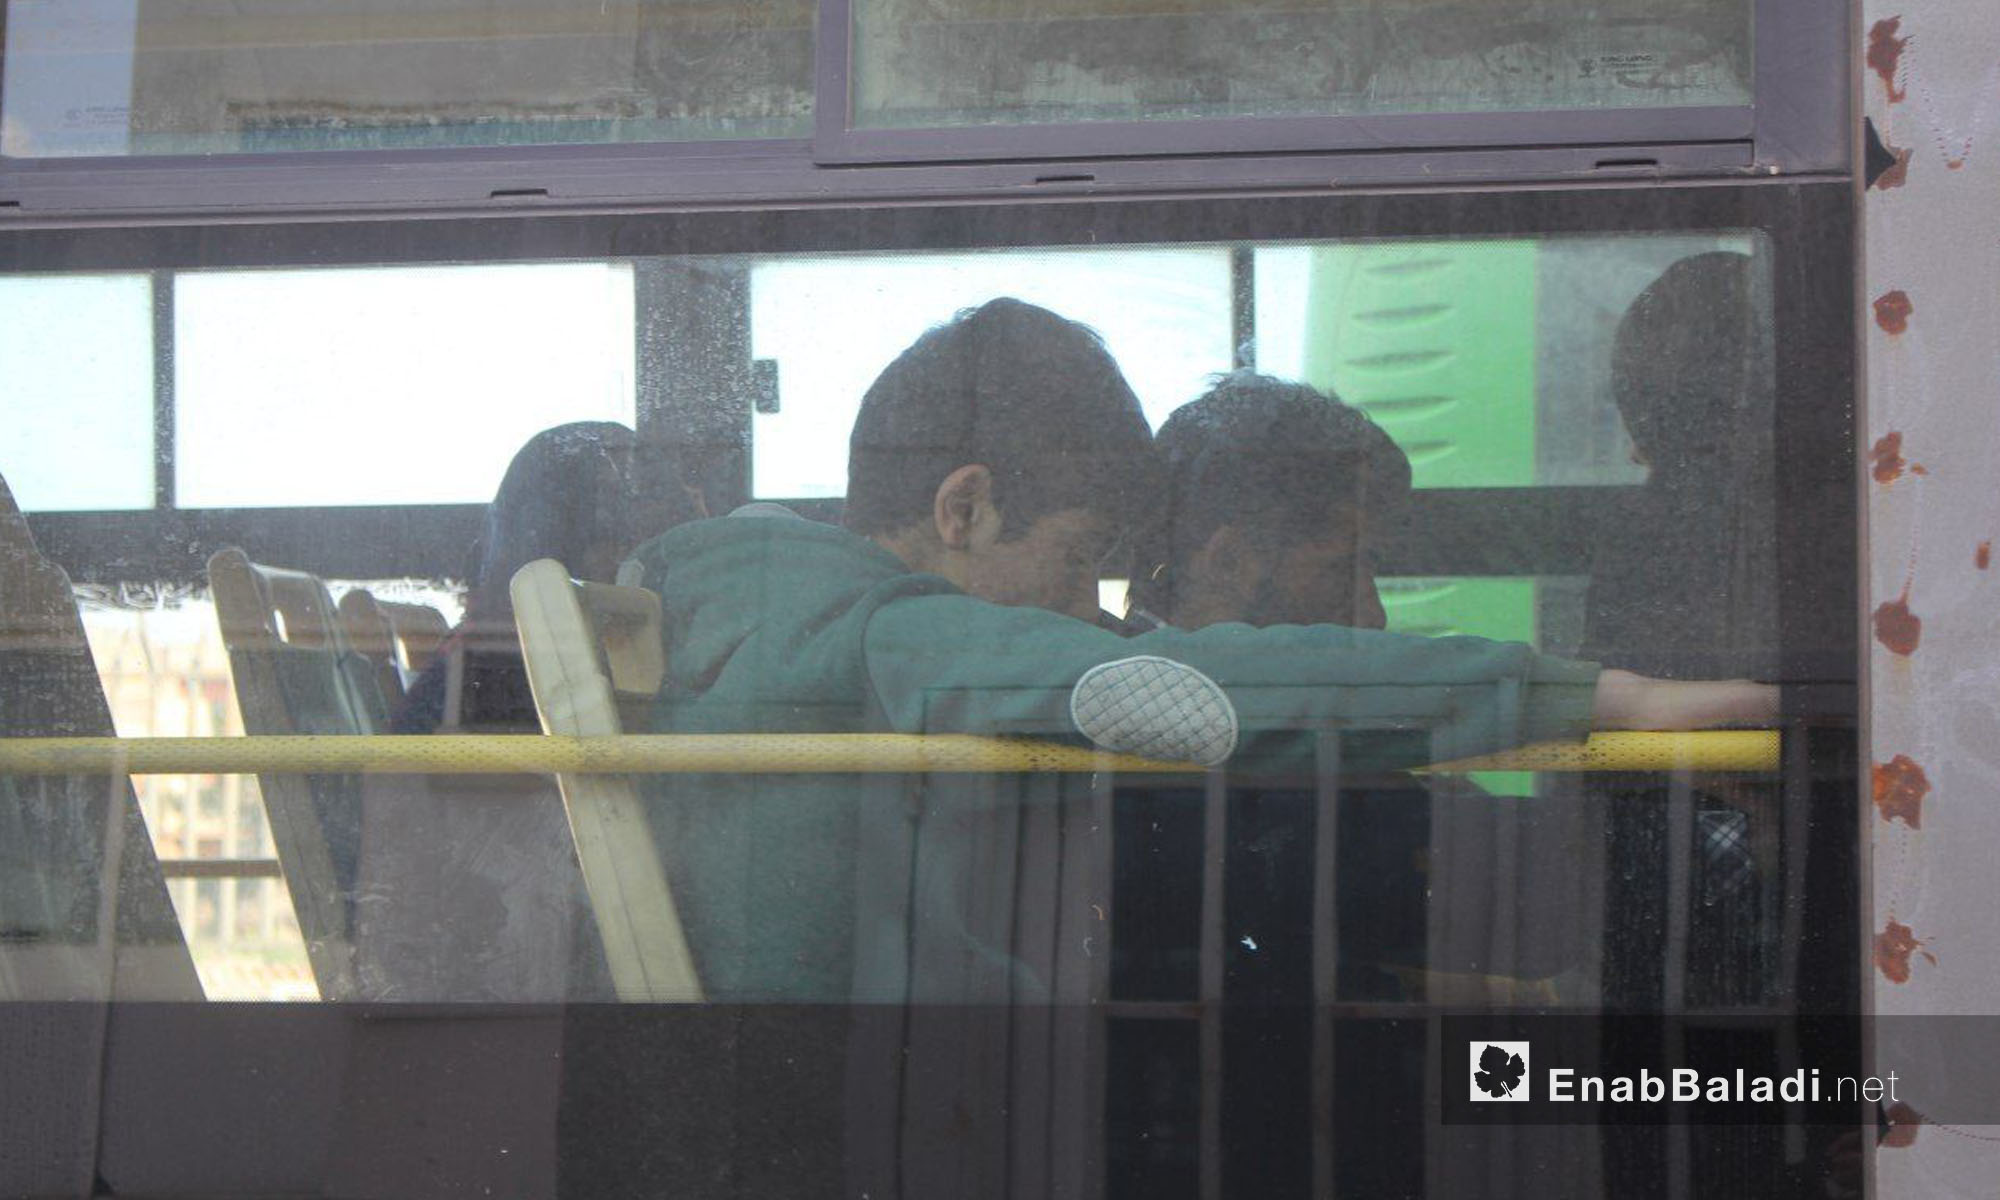 أطفال الوعر ينتظرون في الحافلات قبل الخروج من الحي - 24 نيسان 2017 (عنب بلدي)